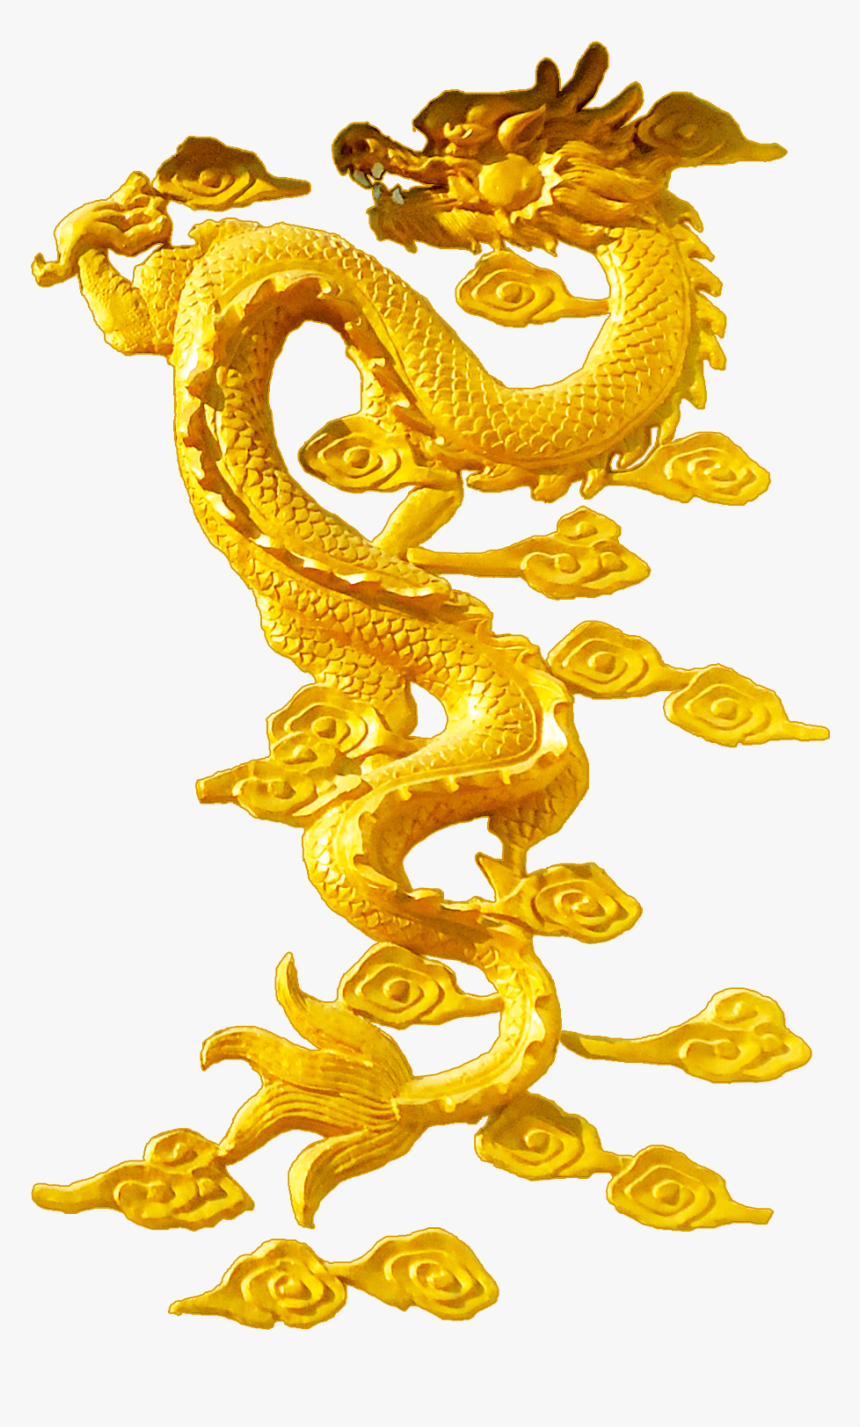 Gold Dragon Icon